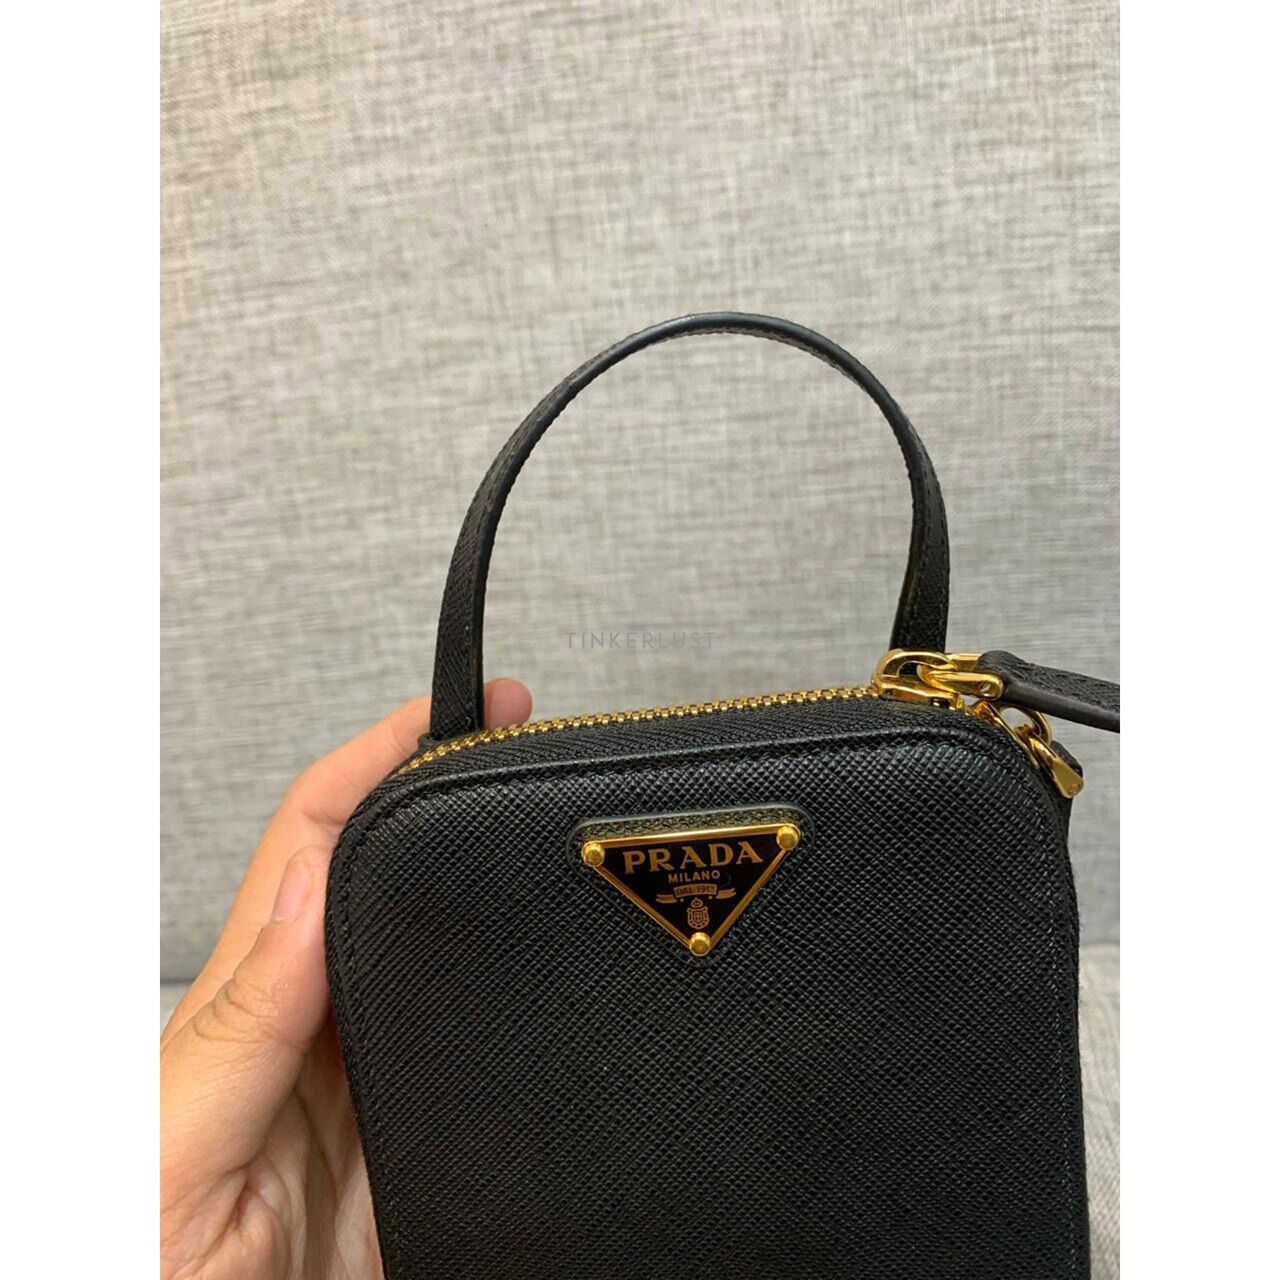 Prada Phone Holder Bag Saffiano Black GHW 2021 Sling Bag